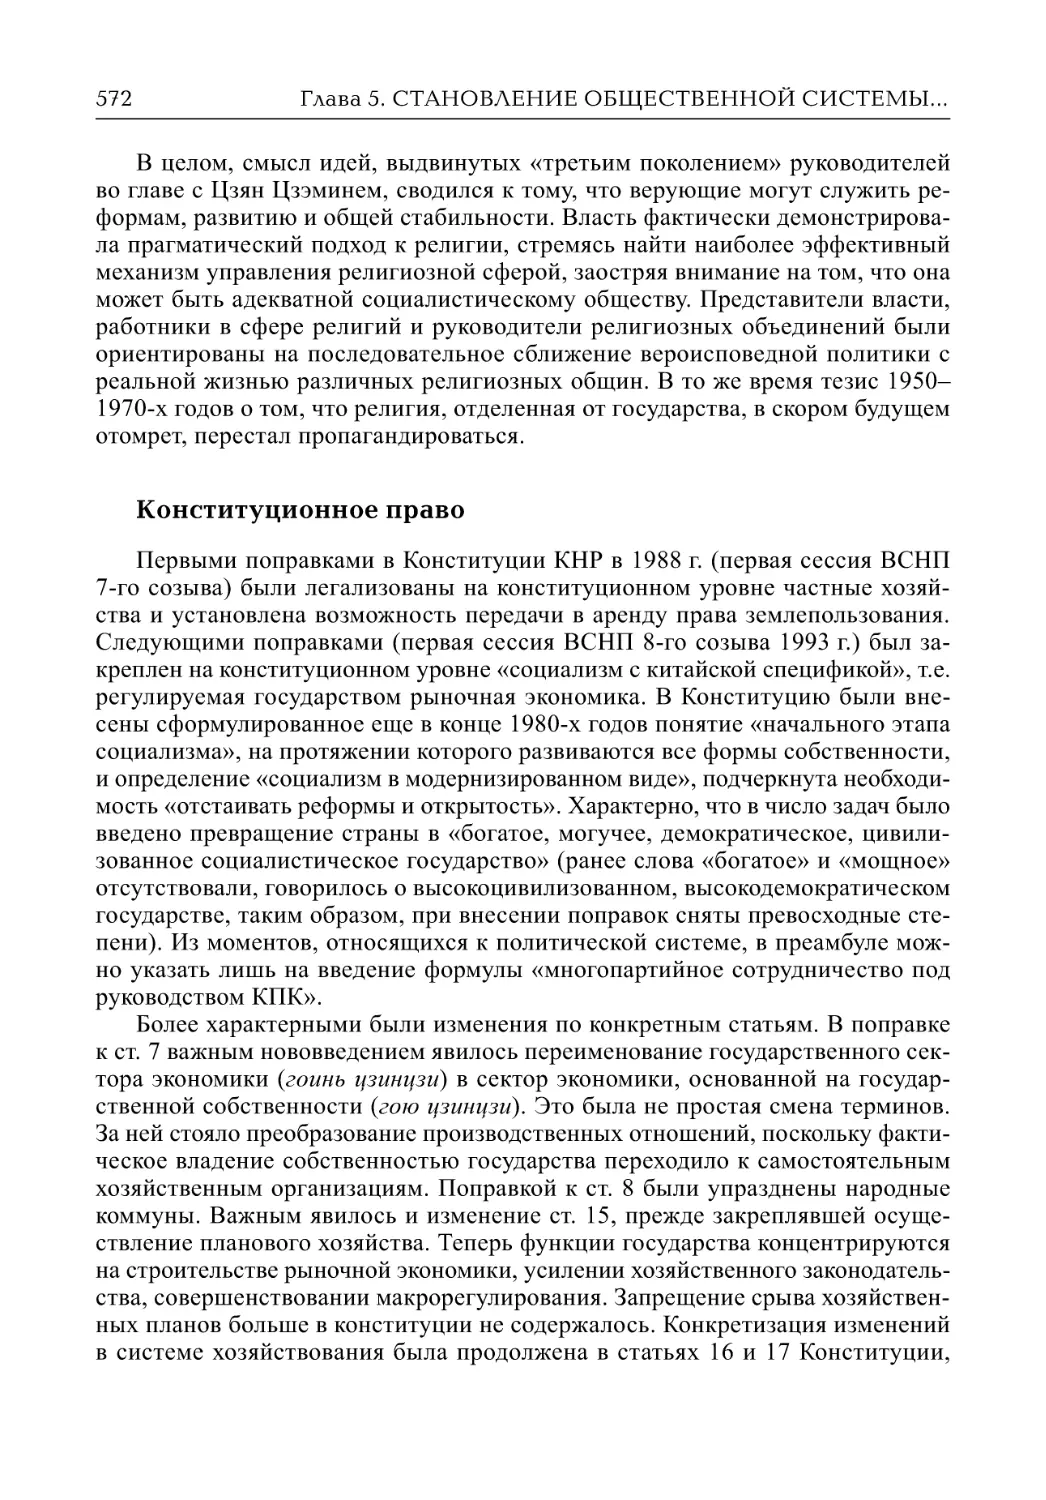 Конституционное право (П.В. Трощинский)